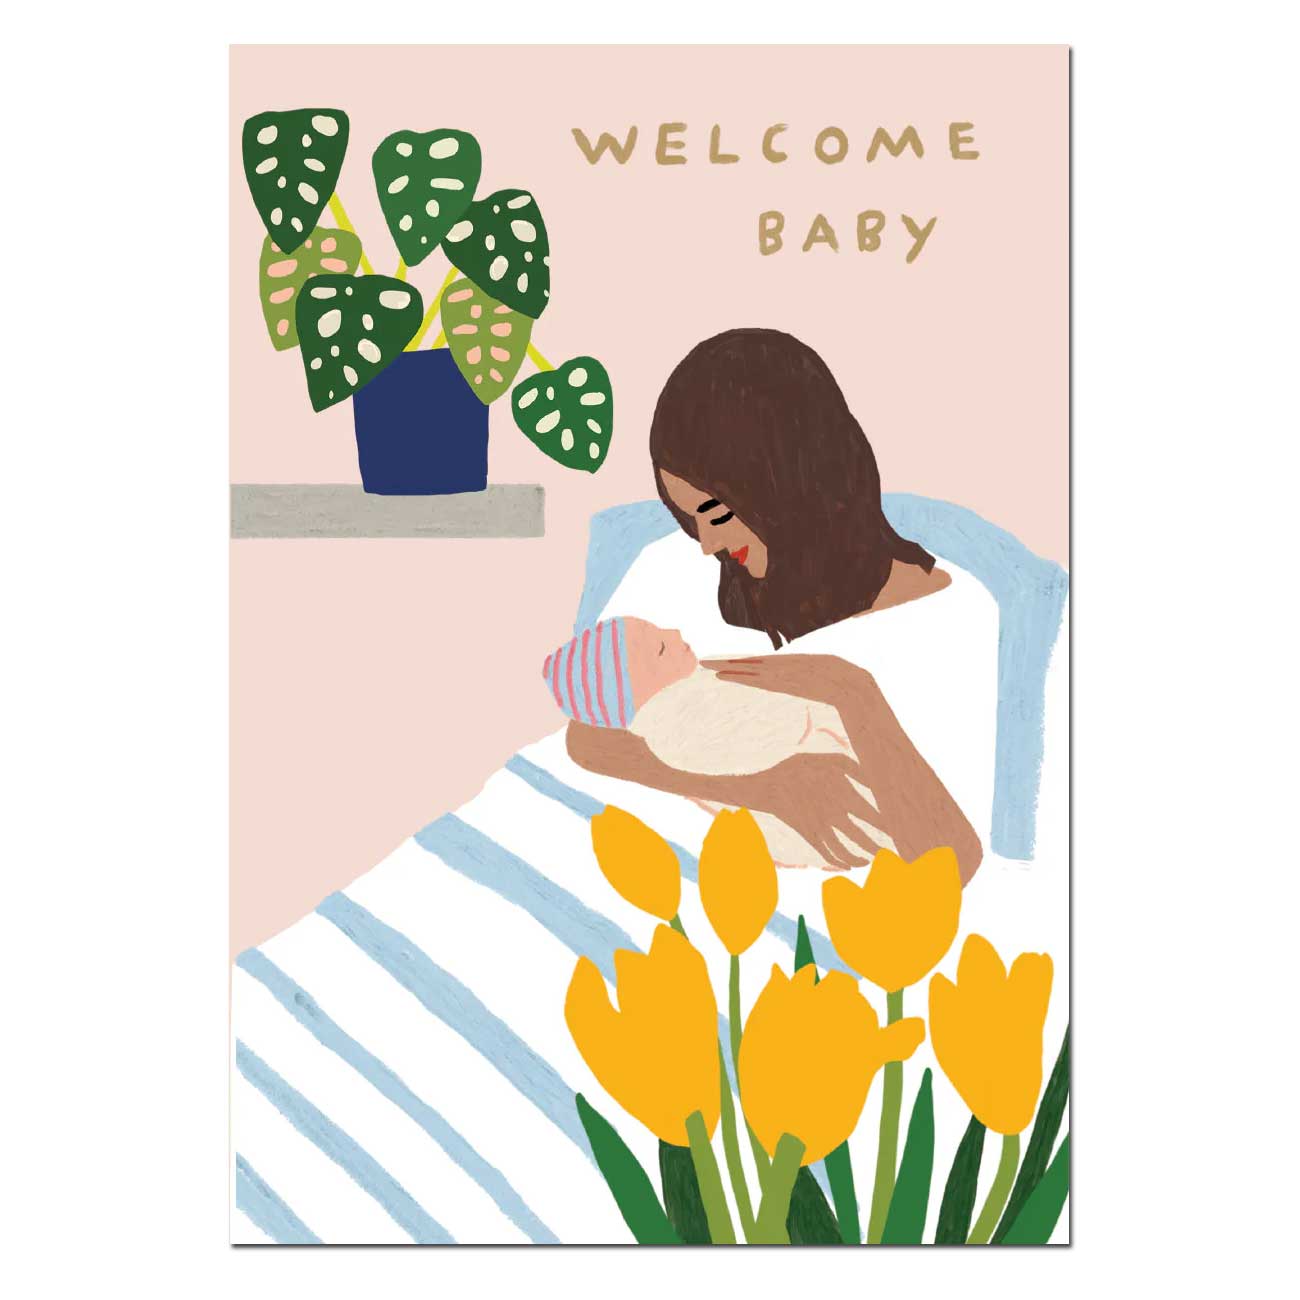 Roger la Borde Doppelkarte "Welcome Baby" Zur Geburt